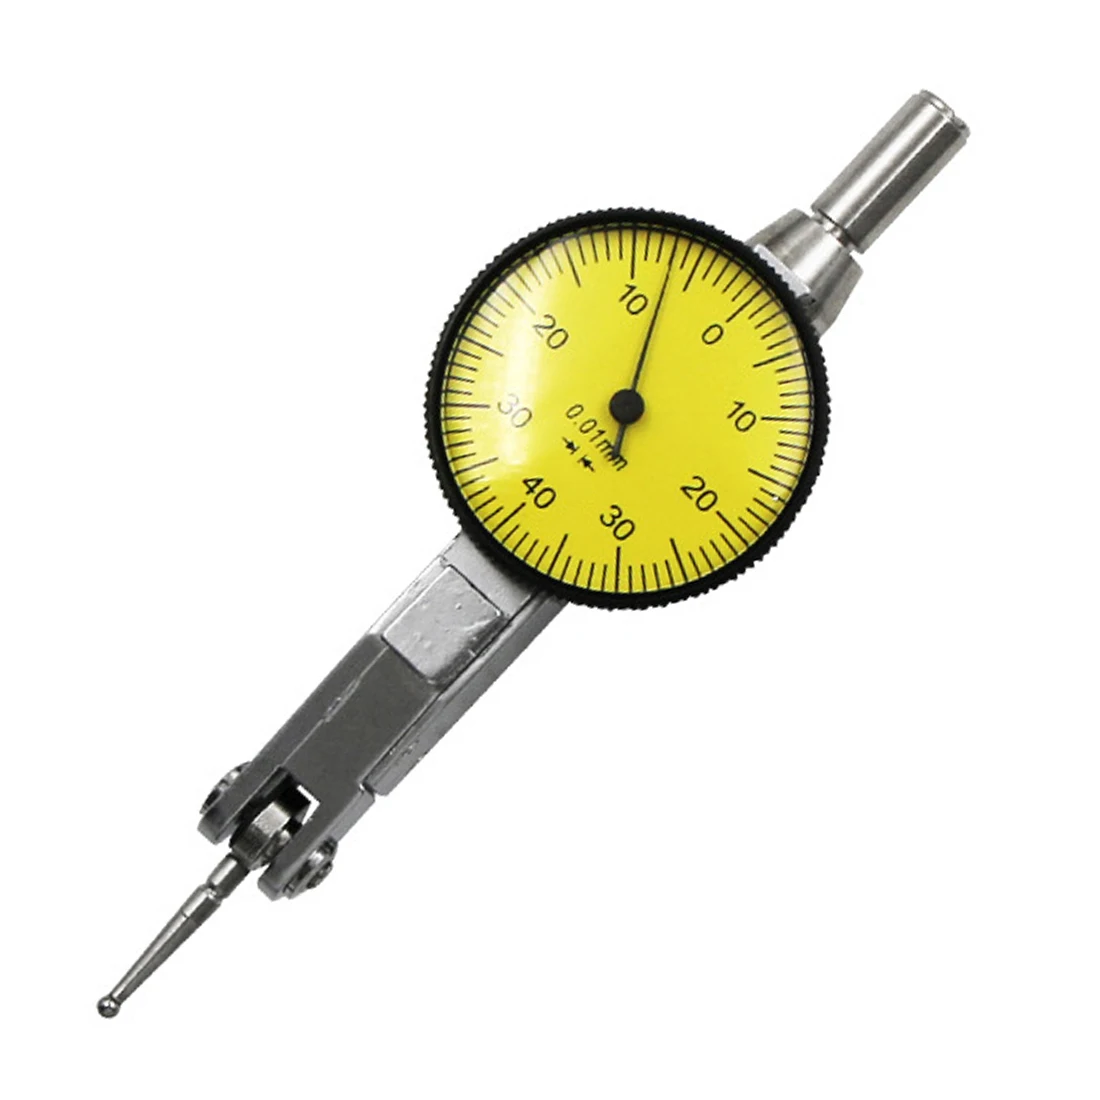 1 шт. 0,01 мм измерительный инструмент точный циферблат измерительный индикатор прецизионный метрический с креплением ласточкин хвост